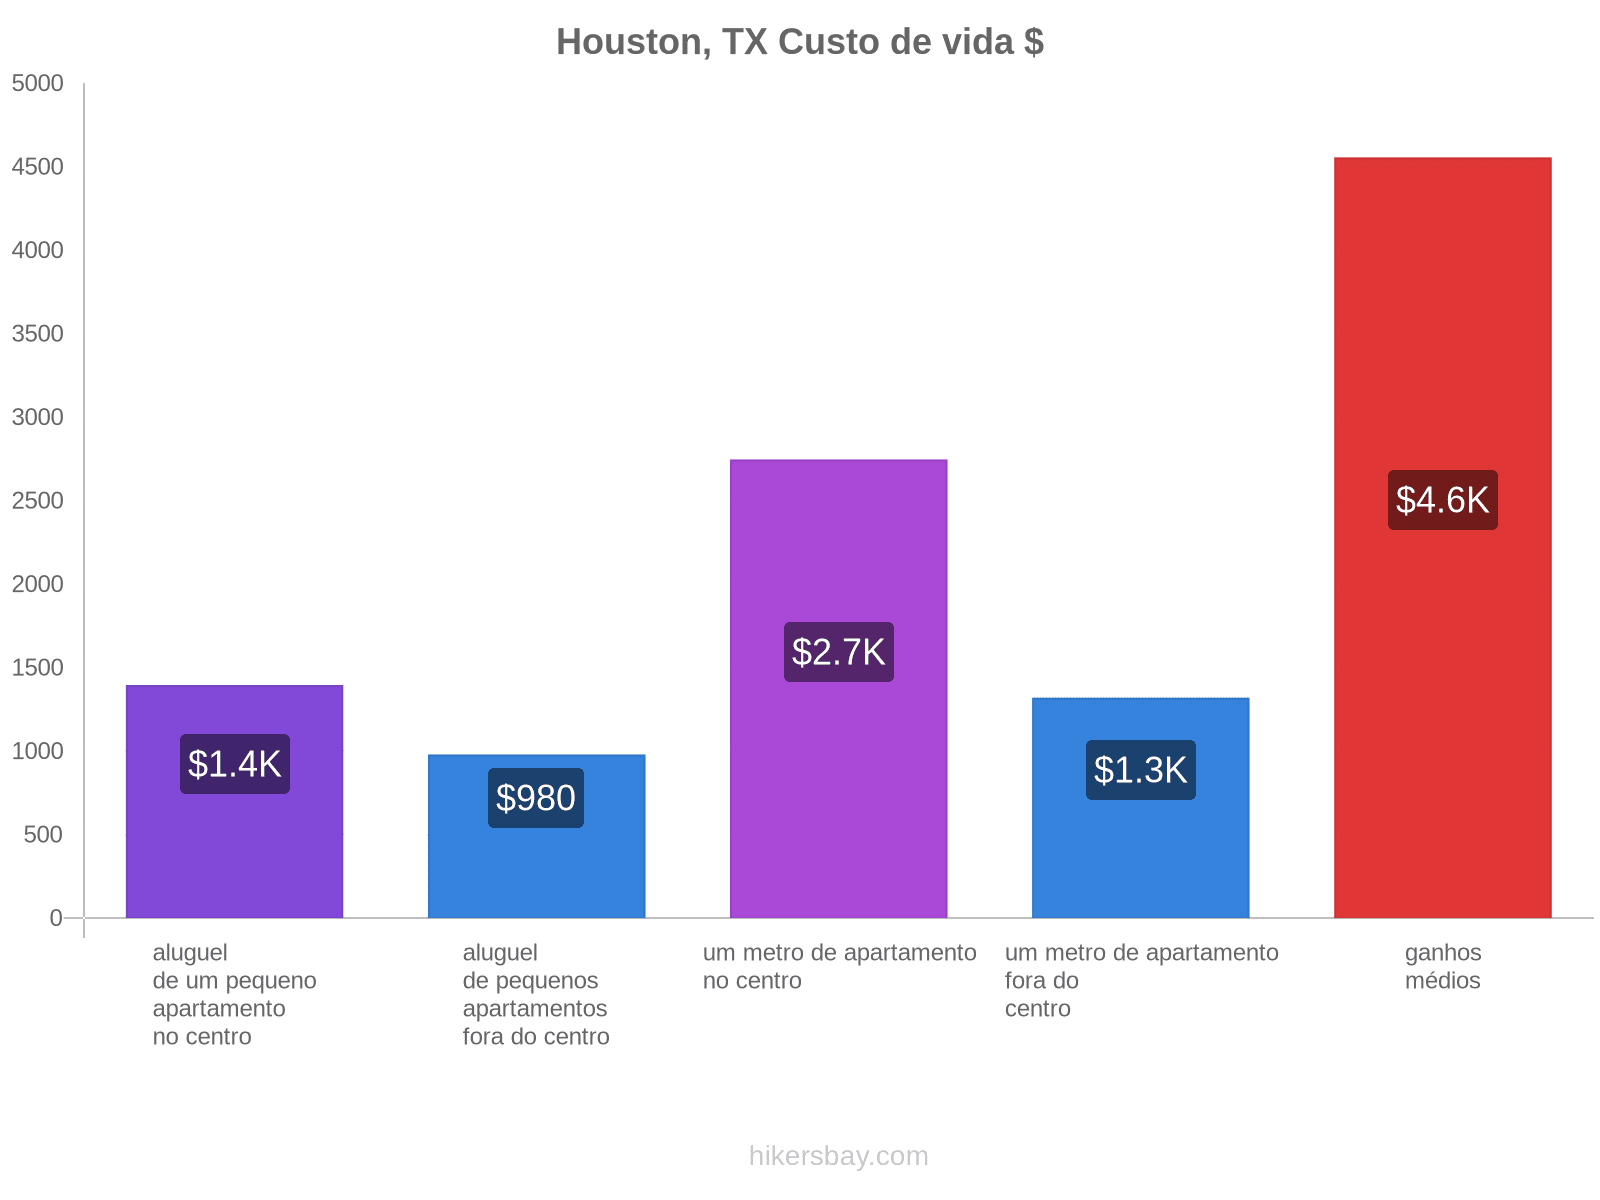 Houston, TX custo de vida hikersbay.com